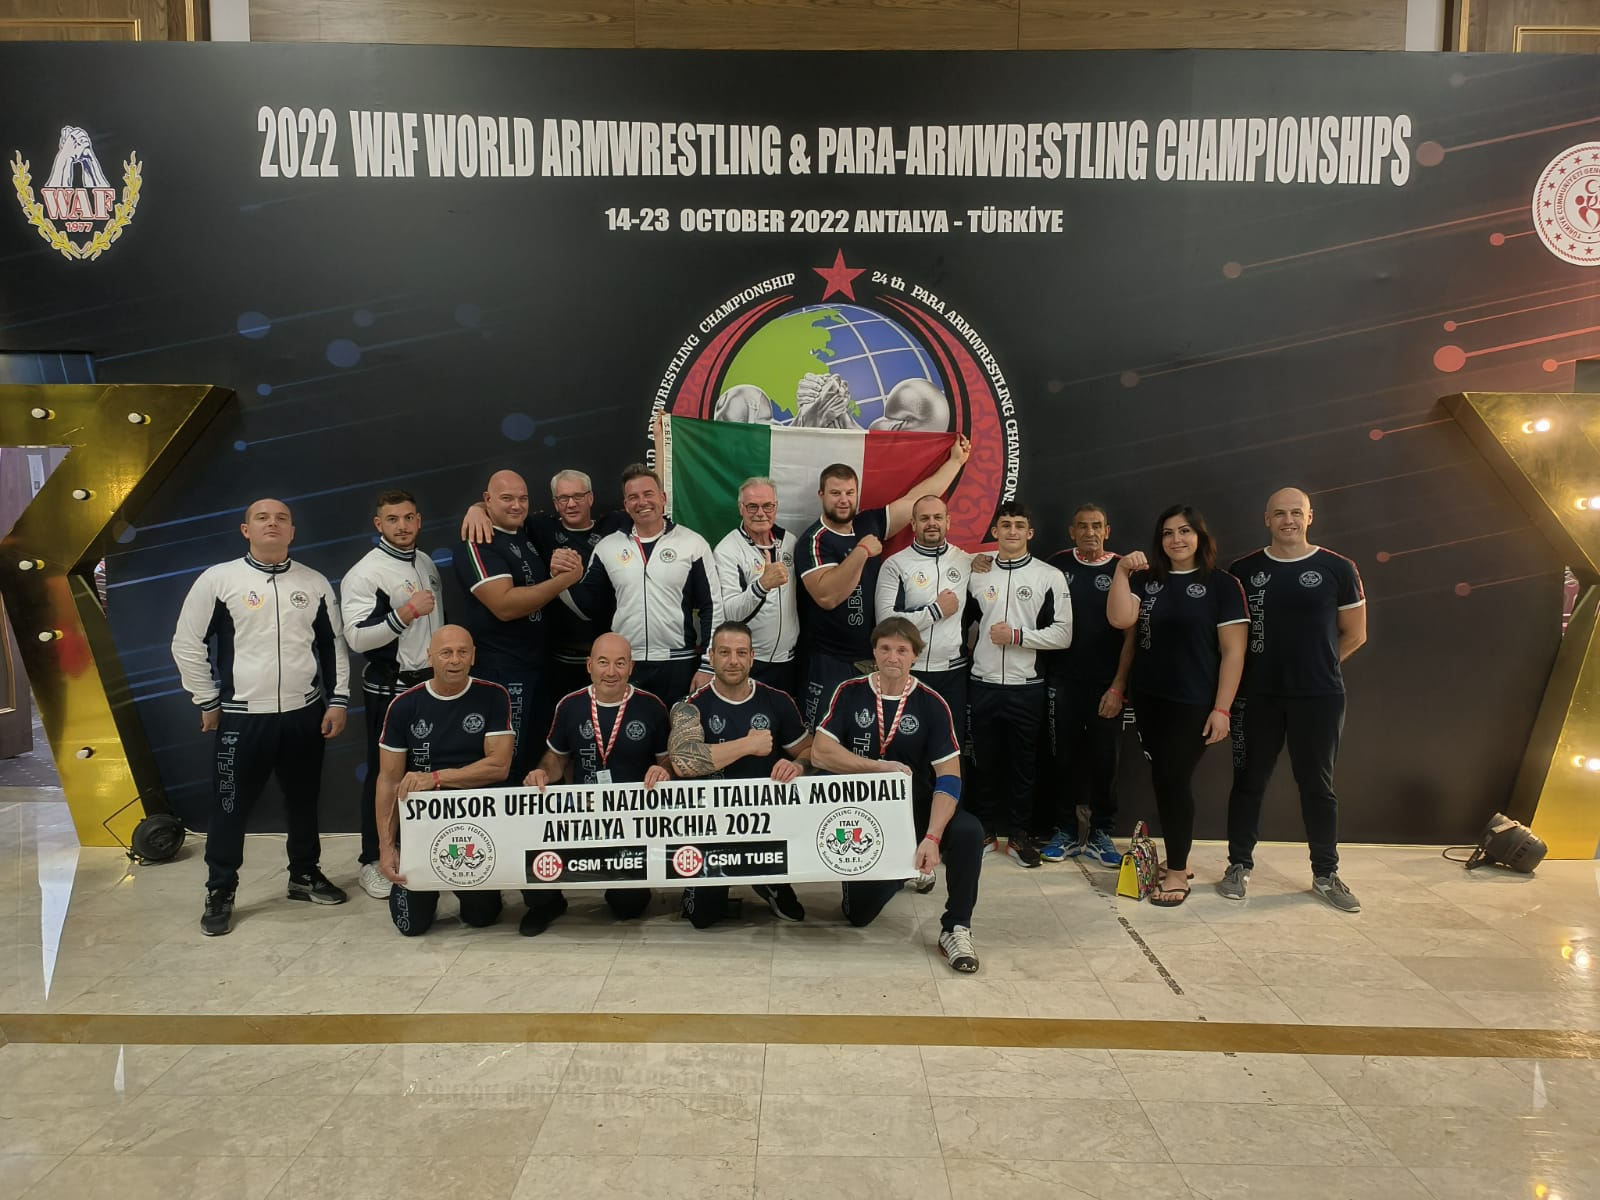 SBFI - Sezione Braccio di Ferro Italia - Mondiale 2022 sponsor